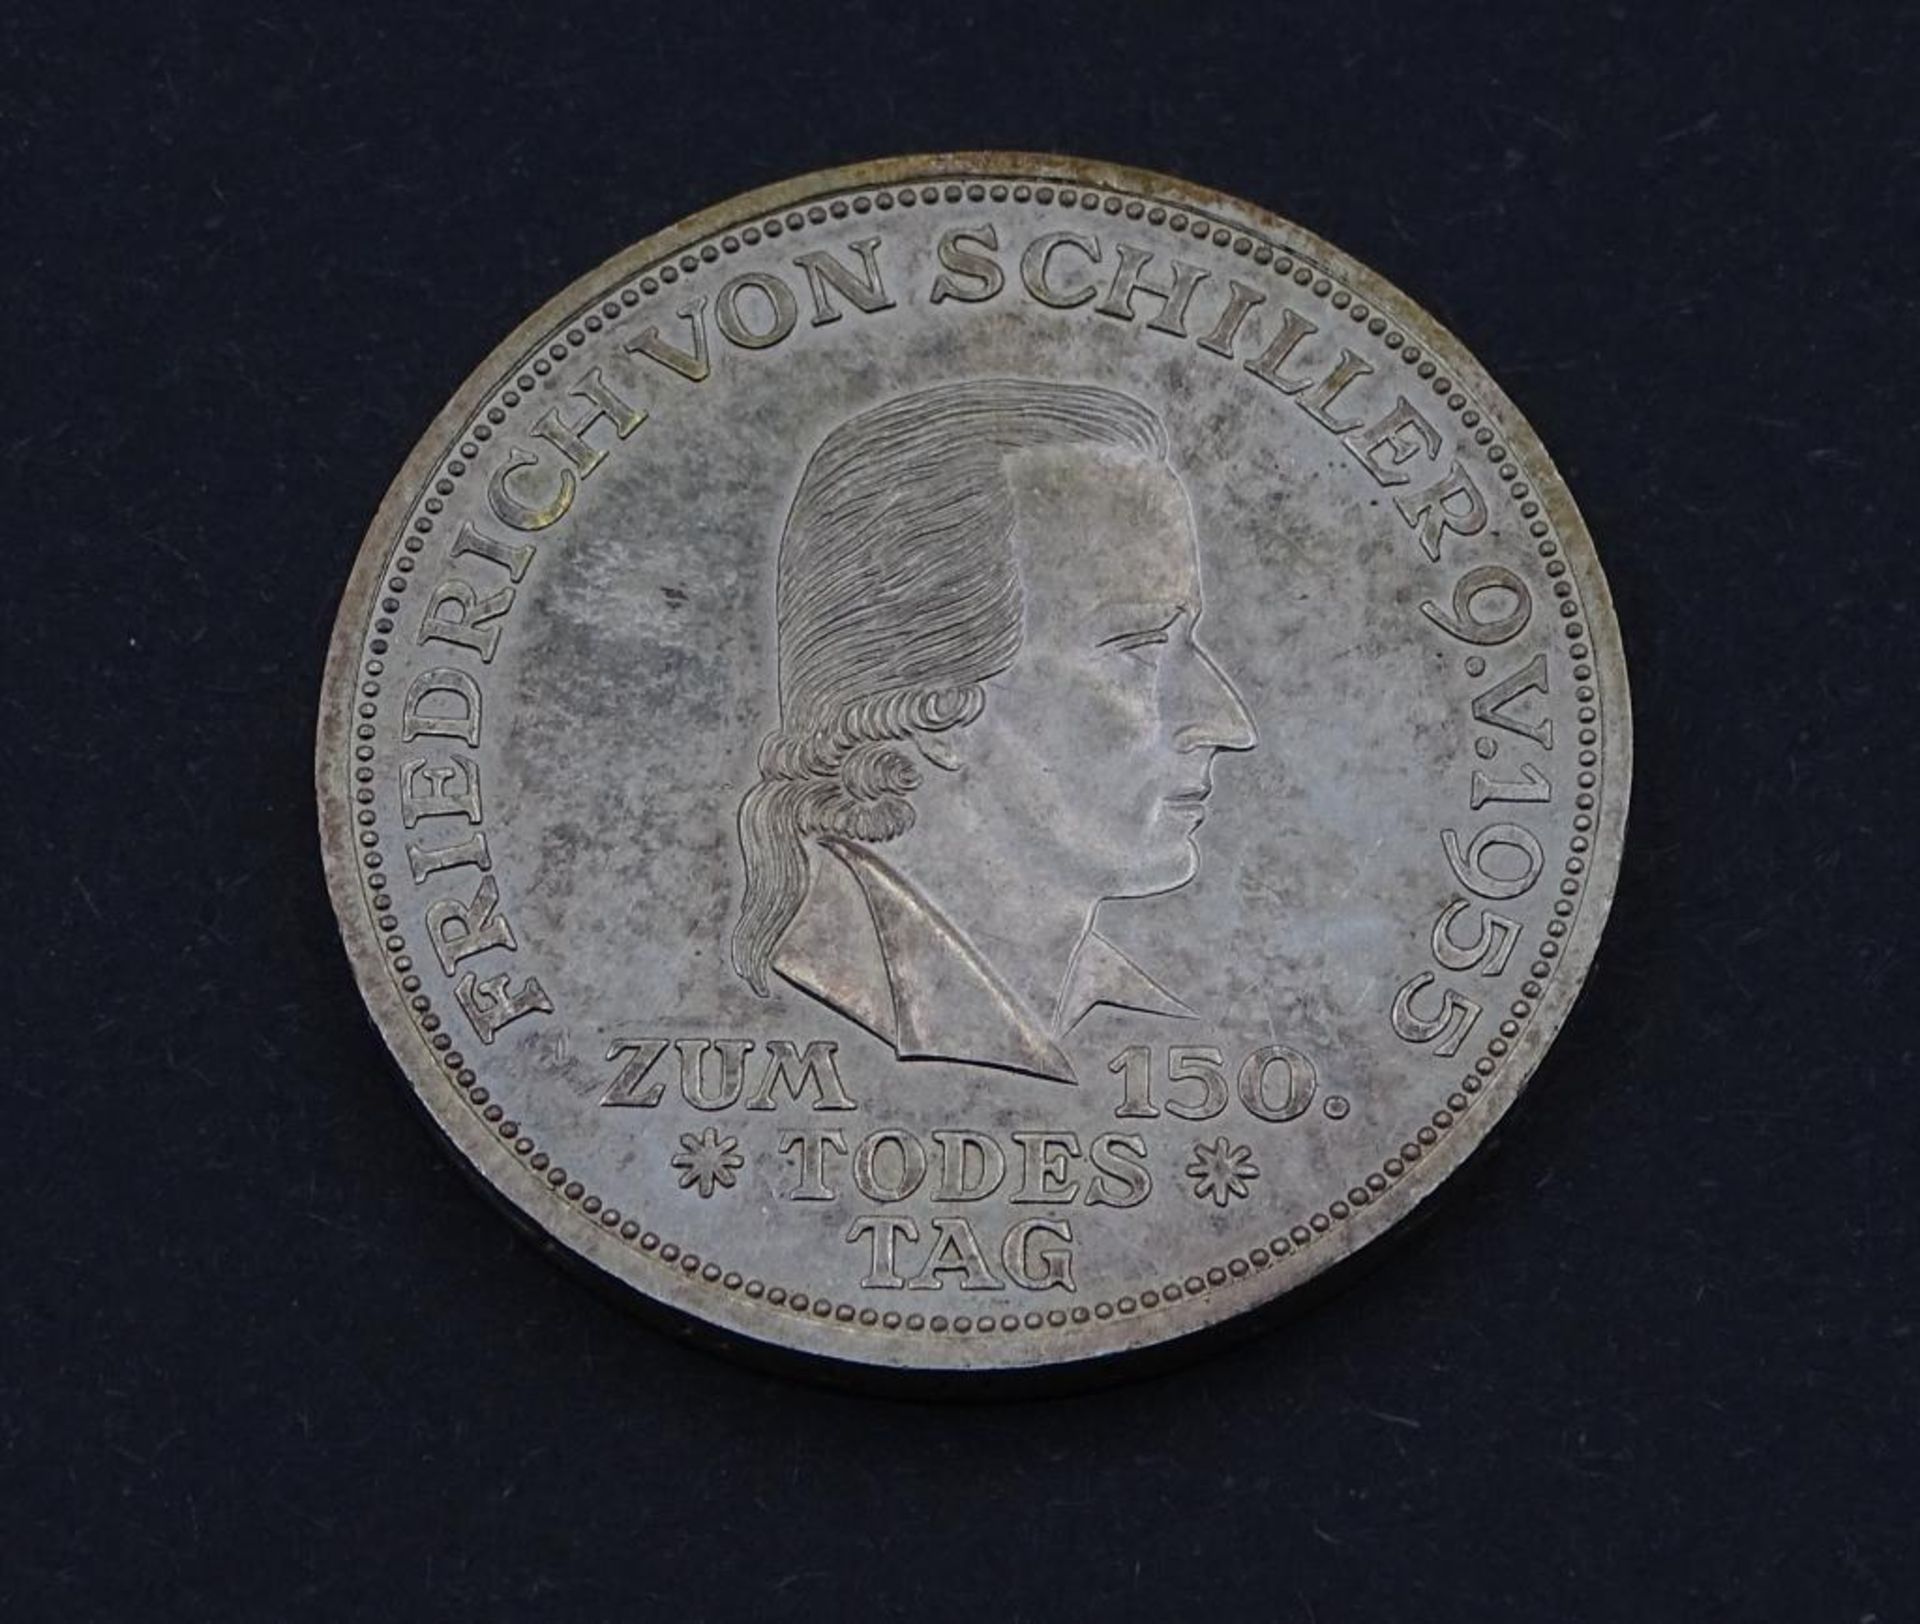 5 DM 1955 F Friedrich von Schiller-zum 150.Todestag- - -22.61 % buyer's premium on the hammer